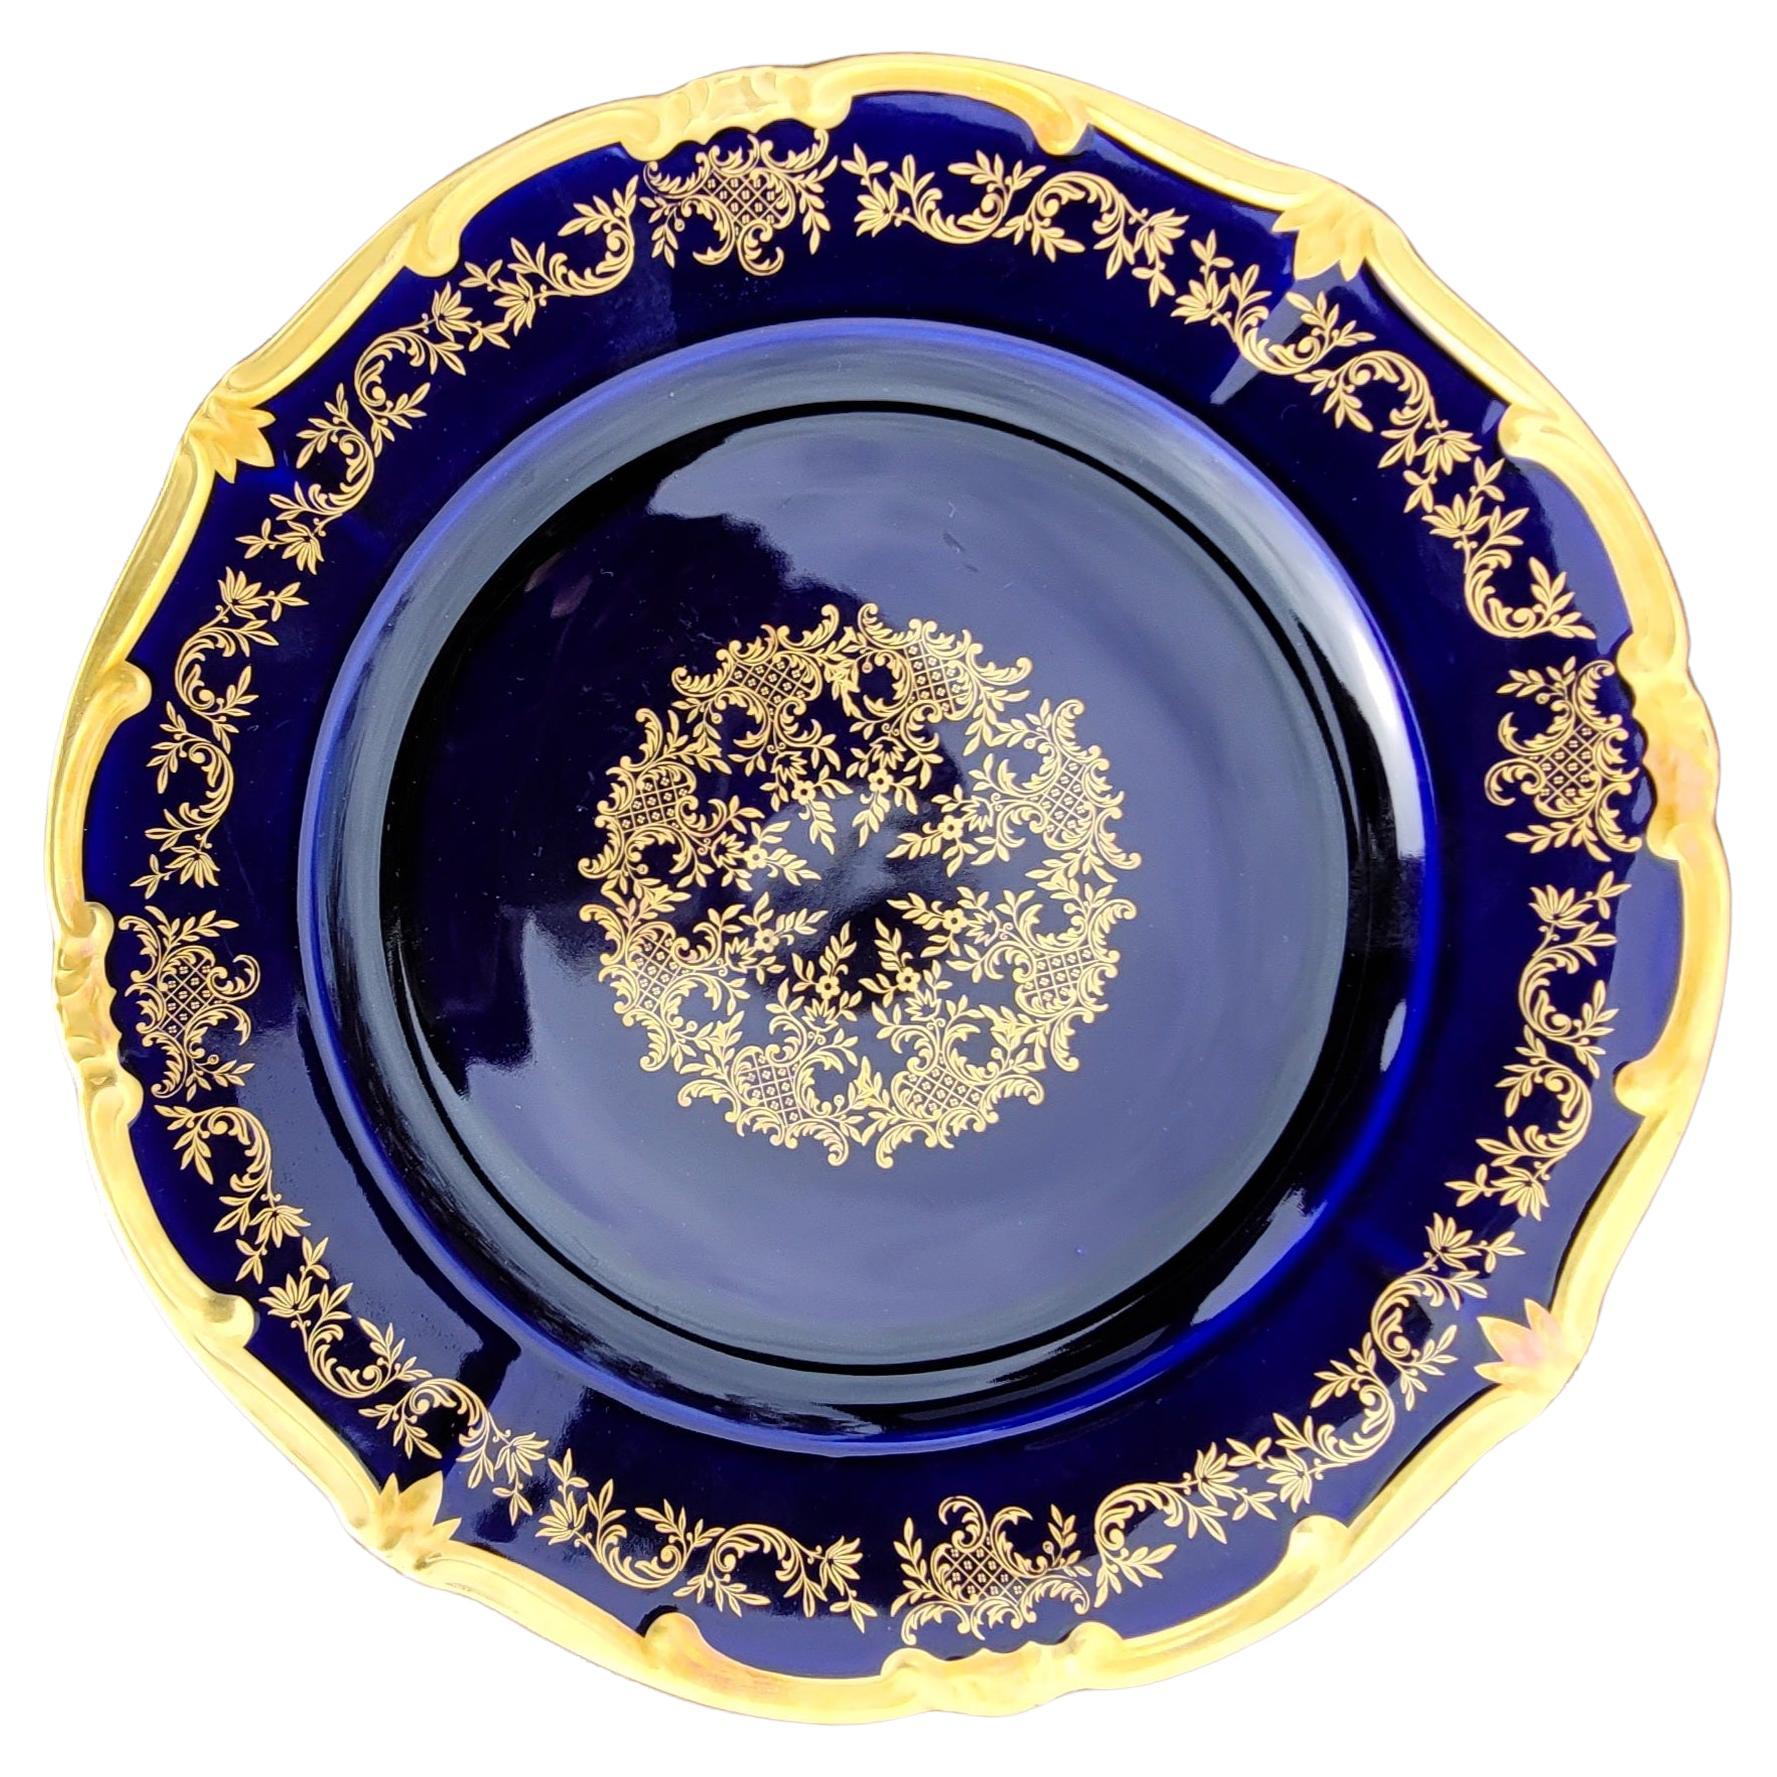 Compote en porcelaine allemande du milieu du siècle, à décor cobalt et doré.
Mesure 13